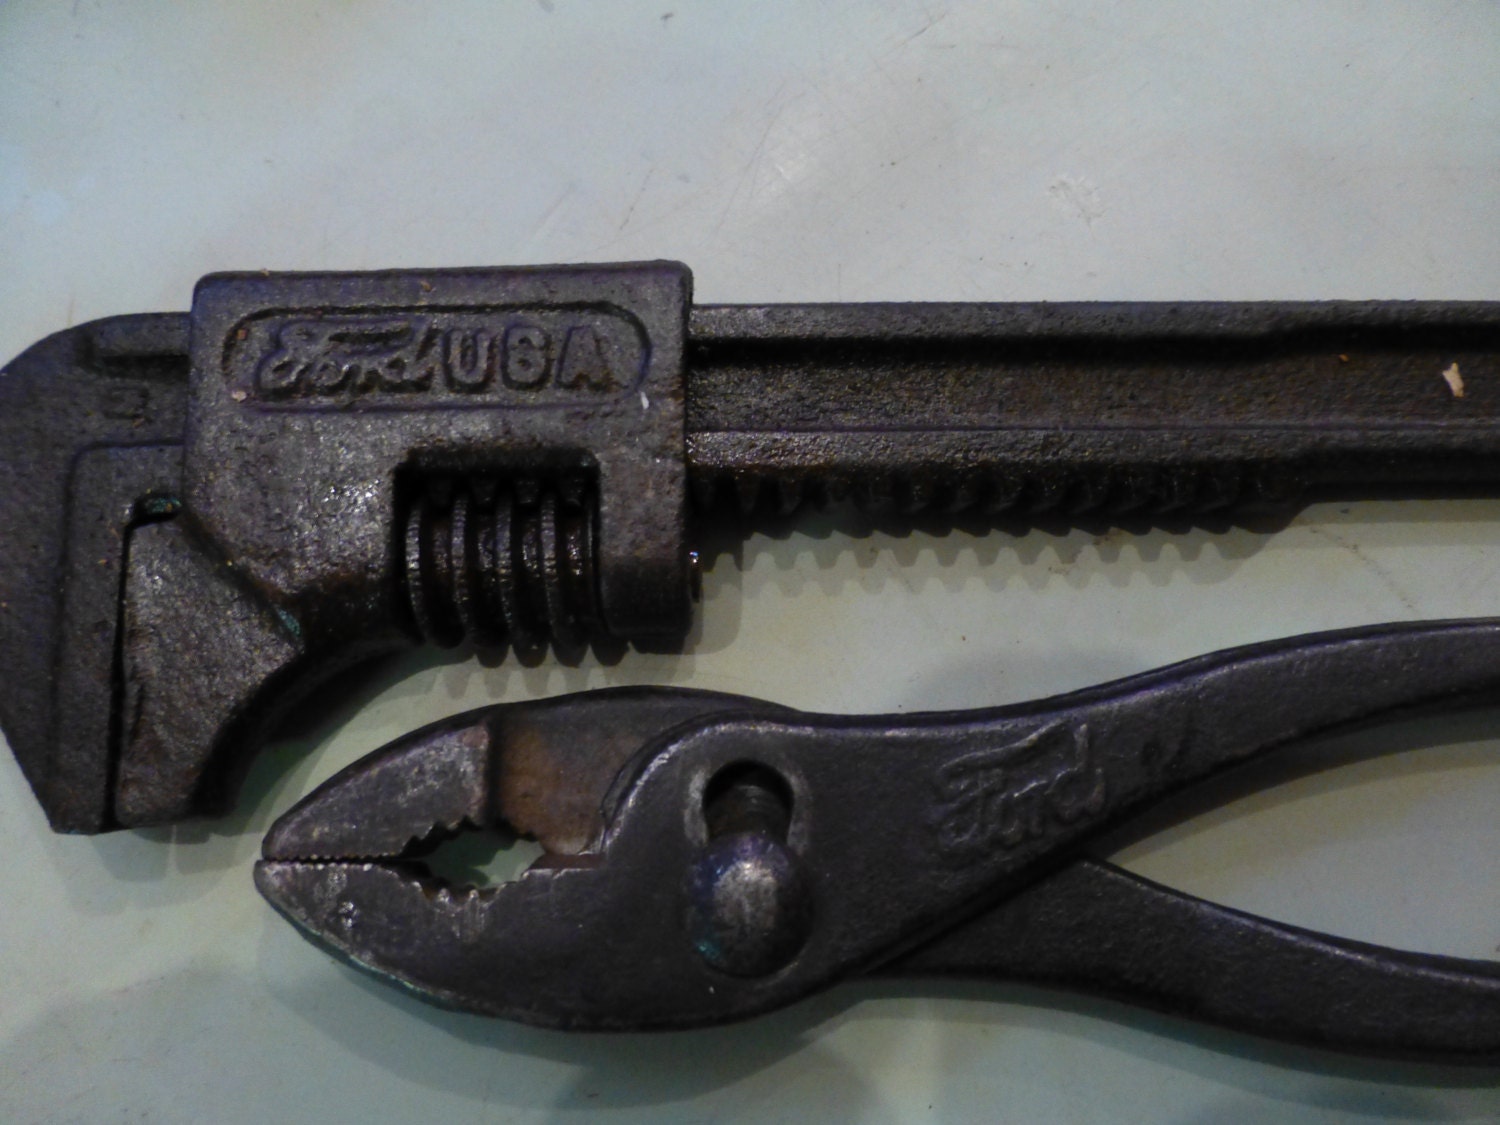 Vintage ford adjustable wrench #4